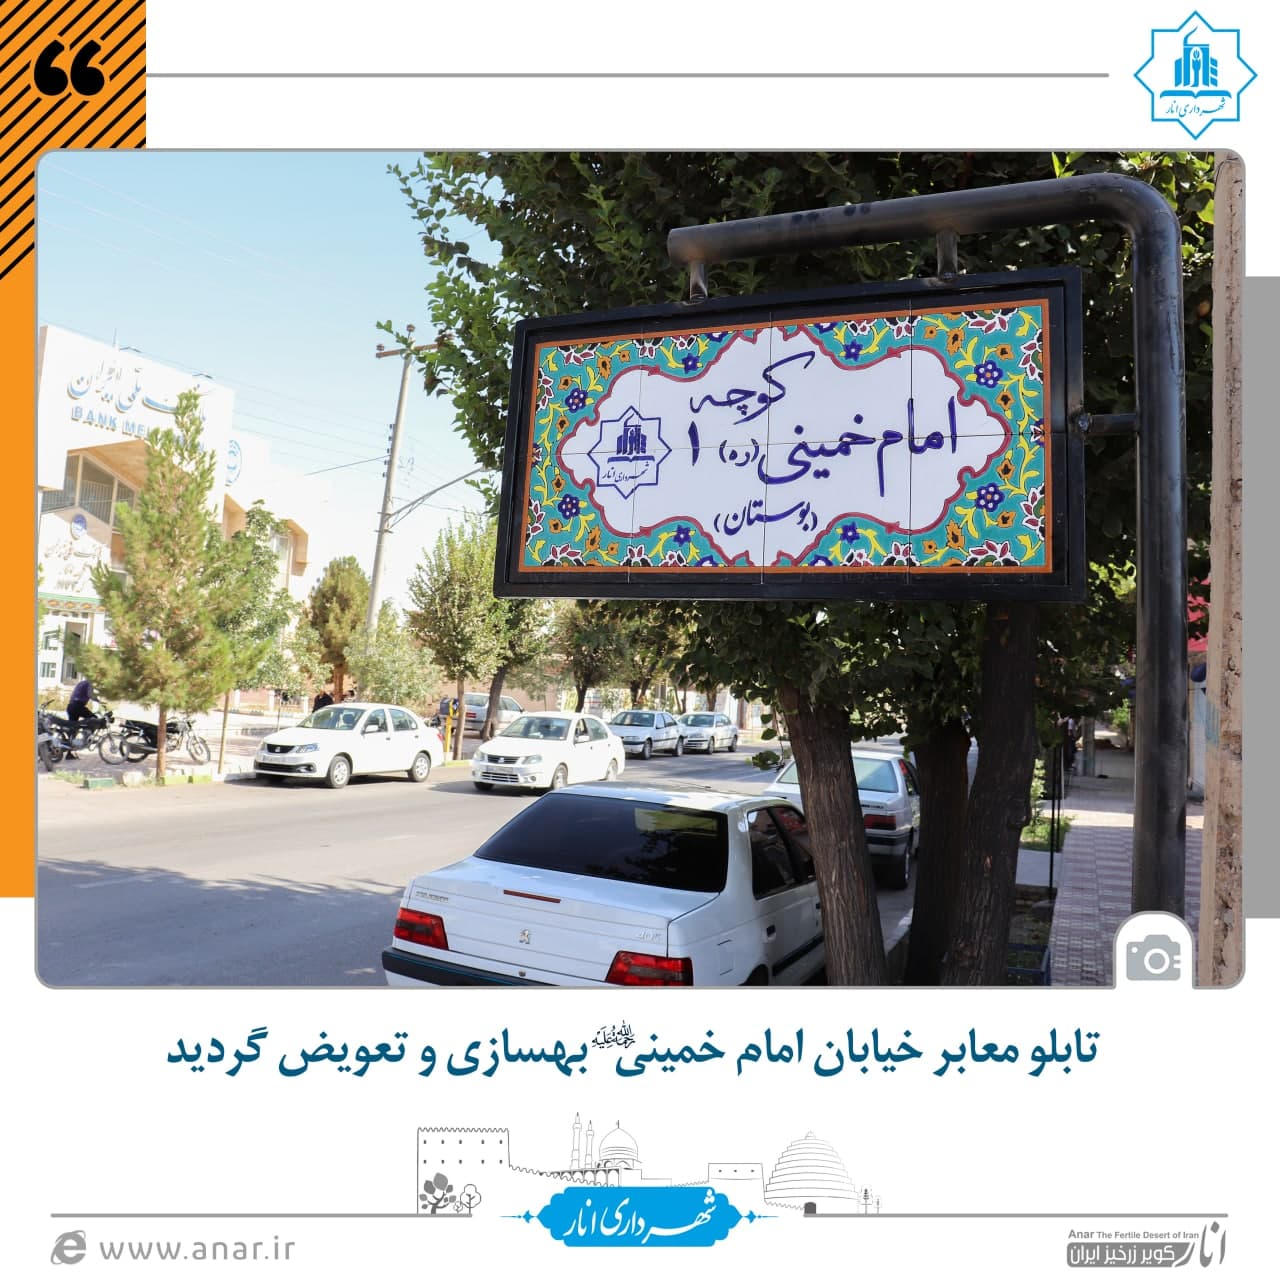 تابلو معابر خیابان امام خمینی (ره) بهسازی و تعویض گردید